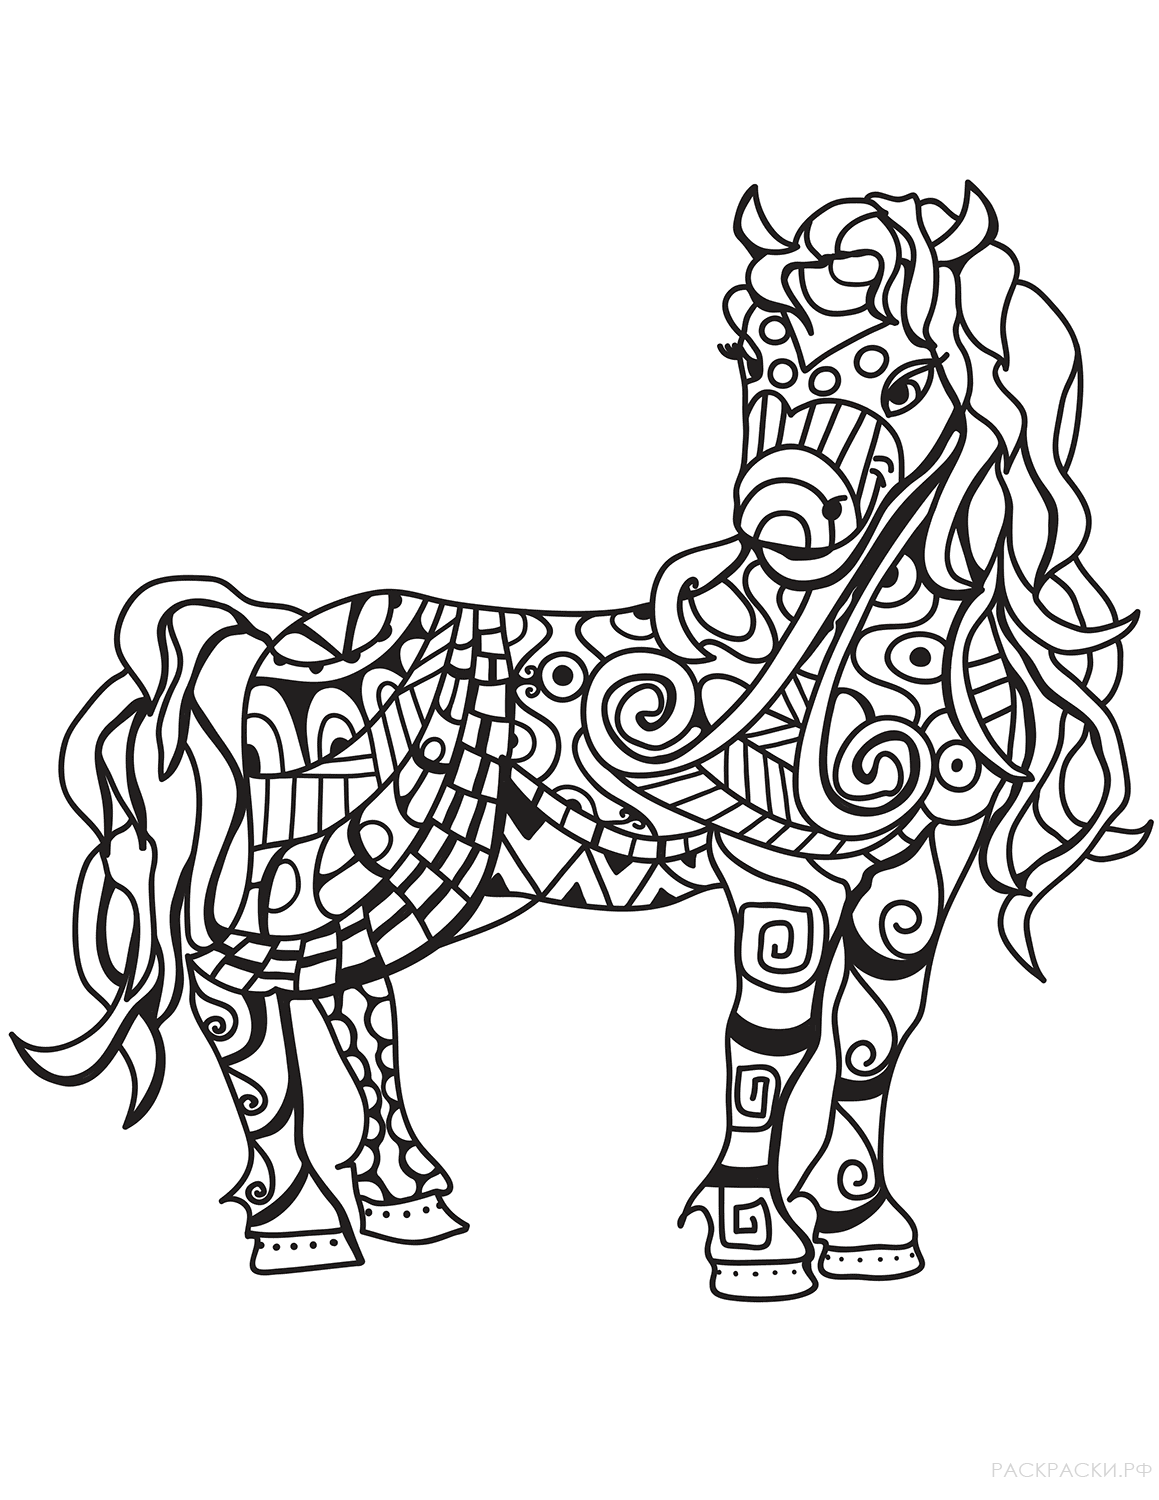 Раскраска Лошадь в технике дзентангл